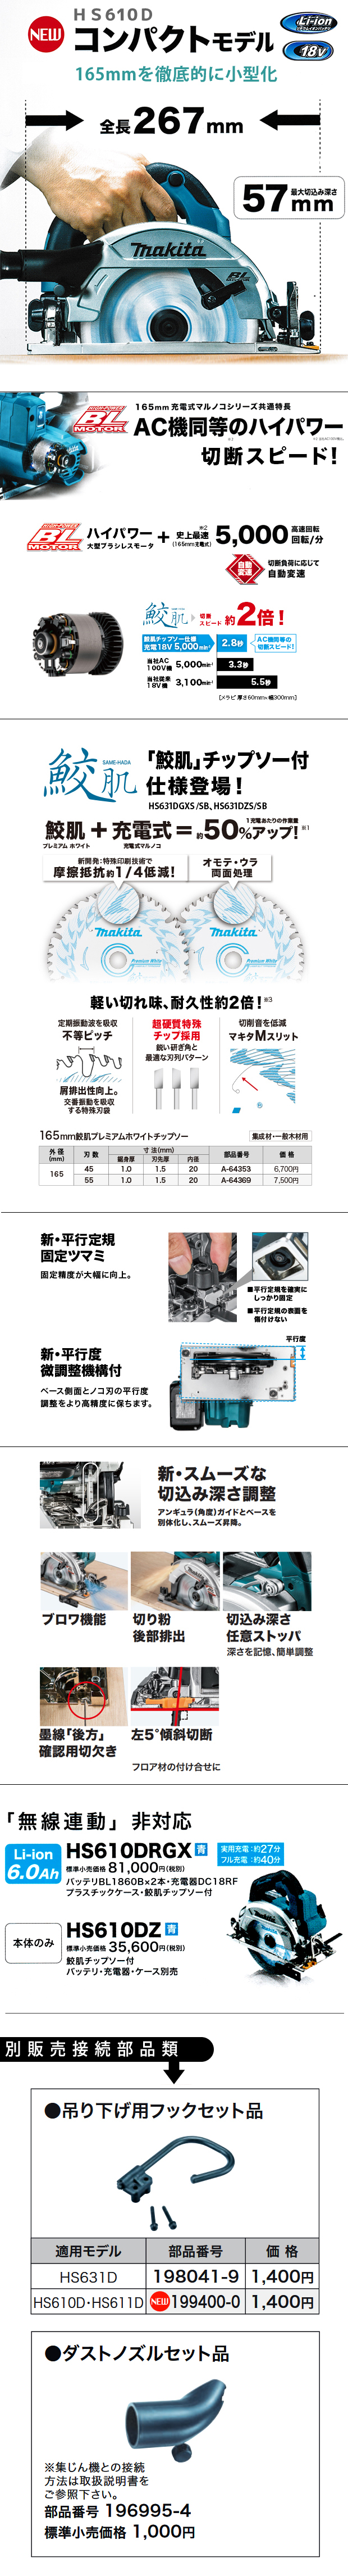 マキタ 165mm 充電式マルノコ HS610D【無線連動非対応コンパクトモデル】